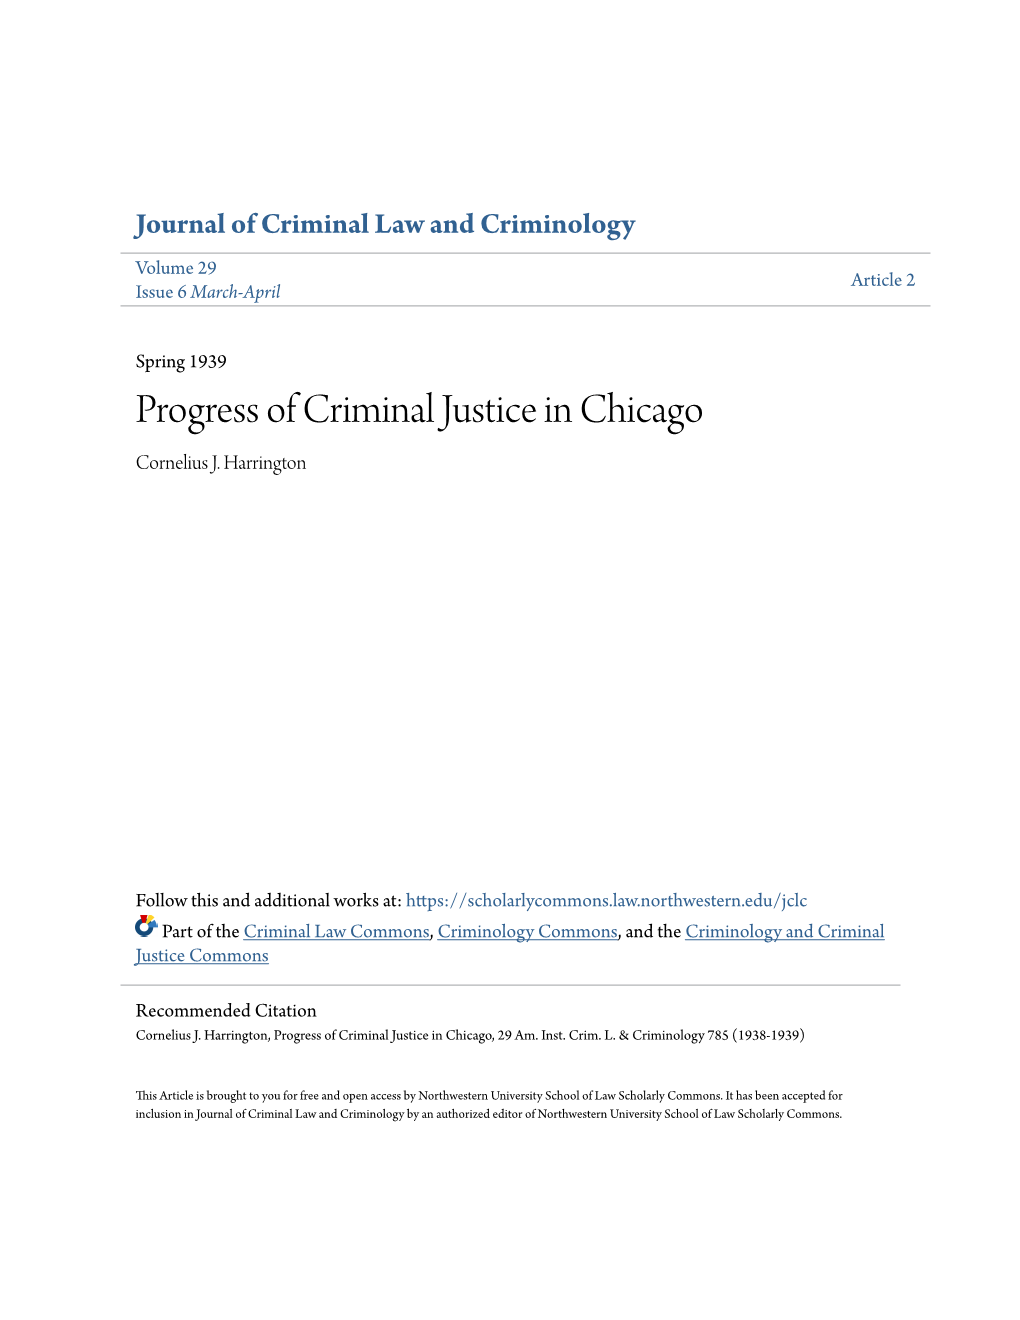 Progress of Criminal Justice in Chicago Cornelius J